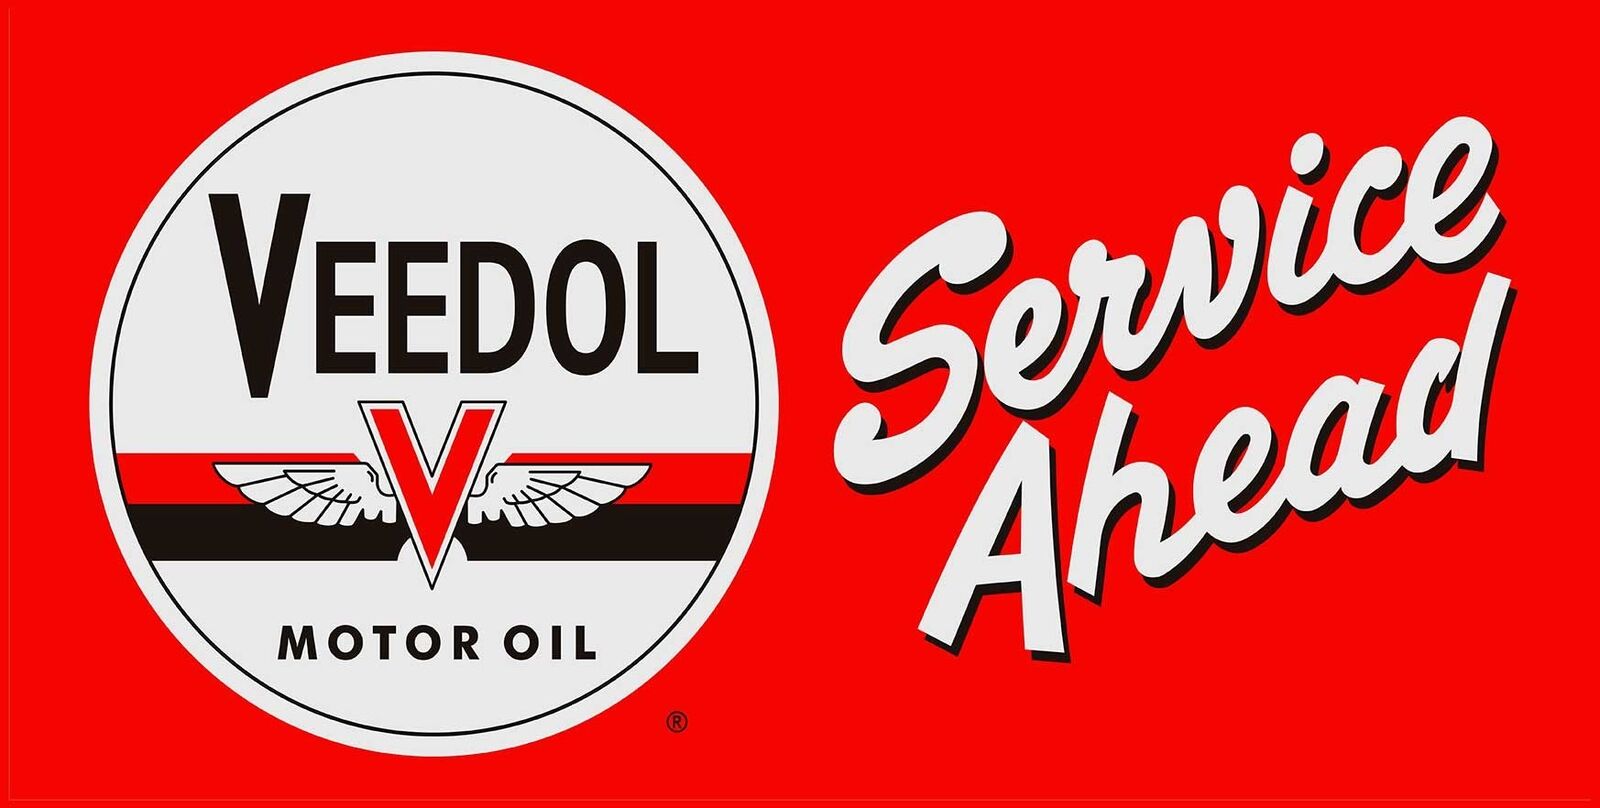 VEEDOL MOTOR OIL SERVICE AHEAD 24\